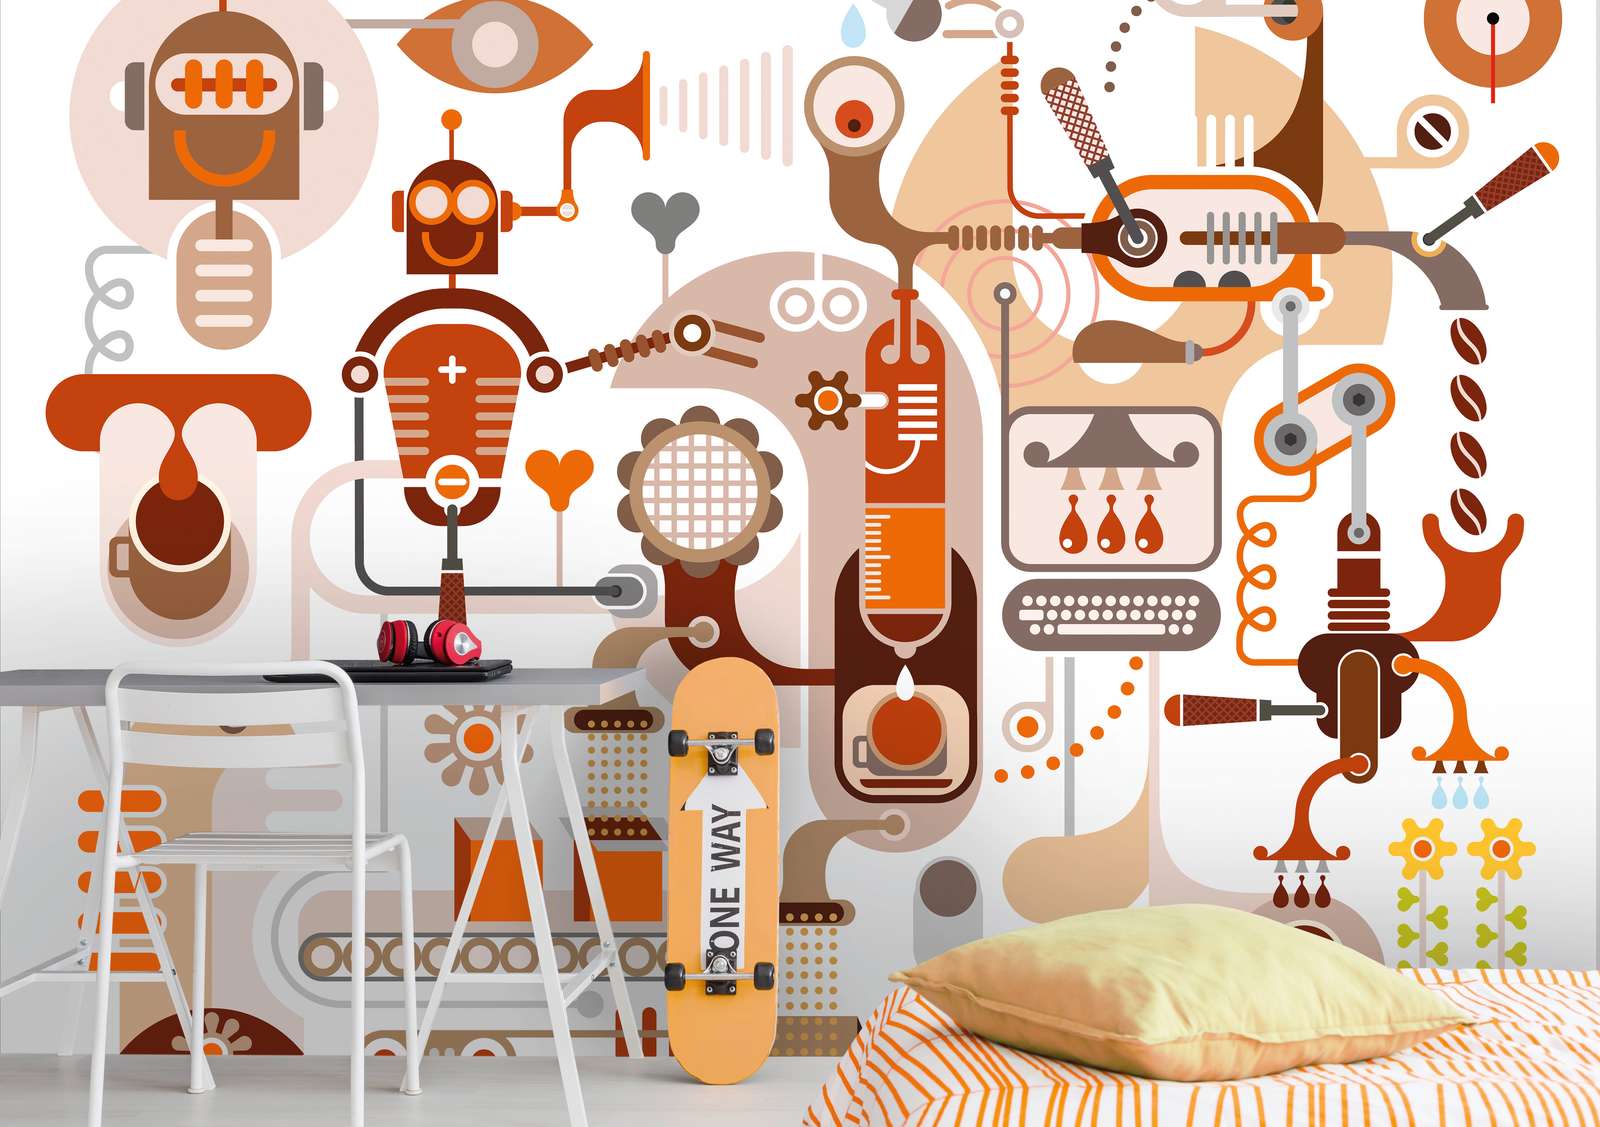             Papel pintado de Robots y máquinas para la habitación de los niños - Marrón, naranja, blanco
        